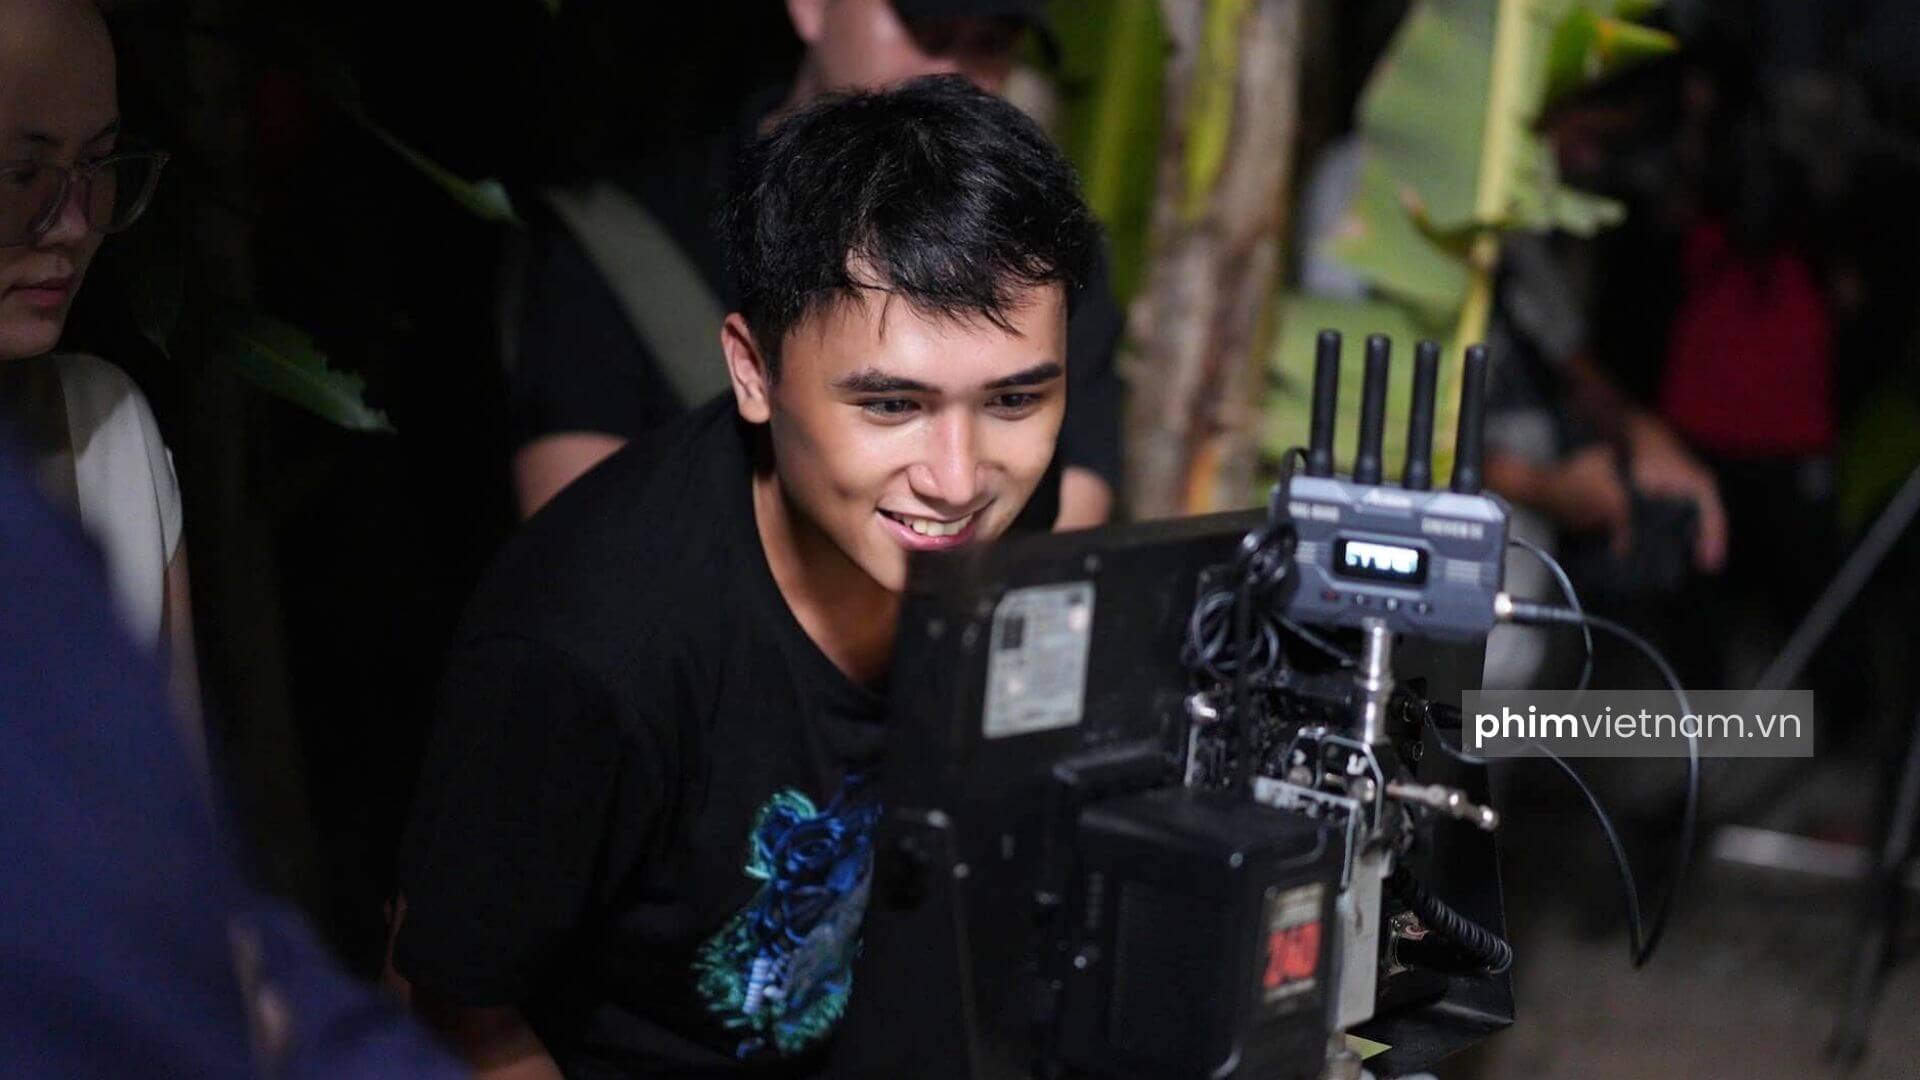 Đạo diễn Nguyễn Chung trong một buổi quay phim